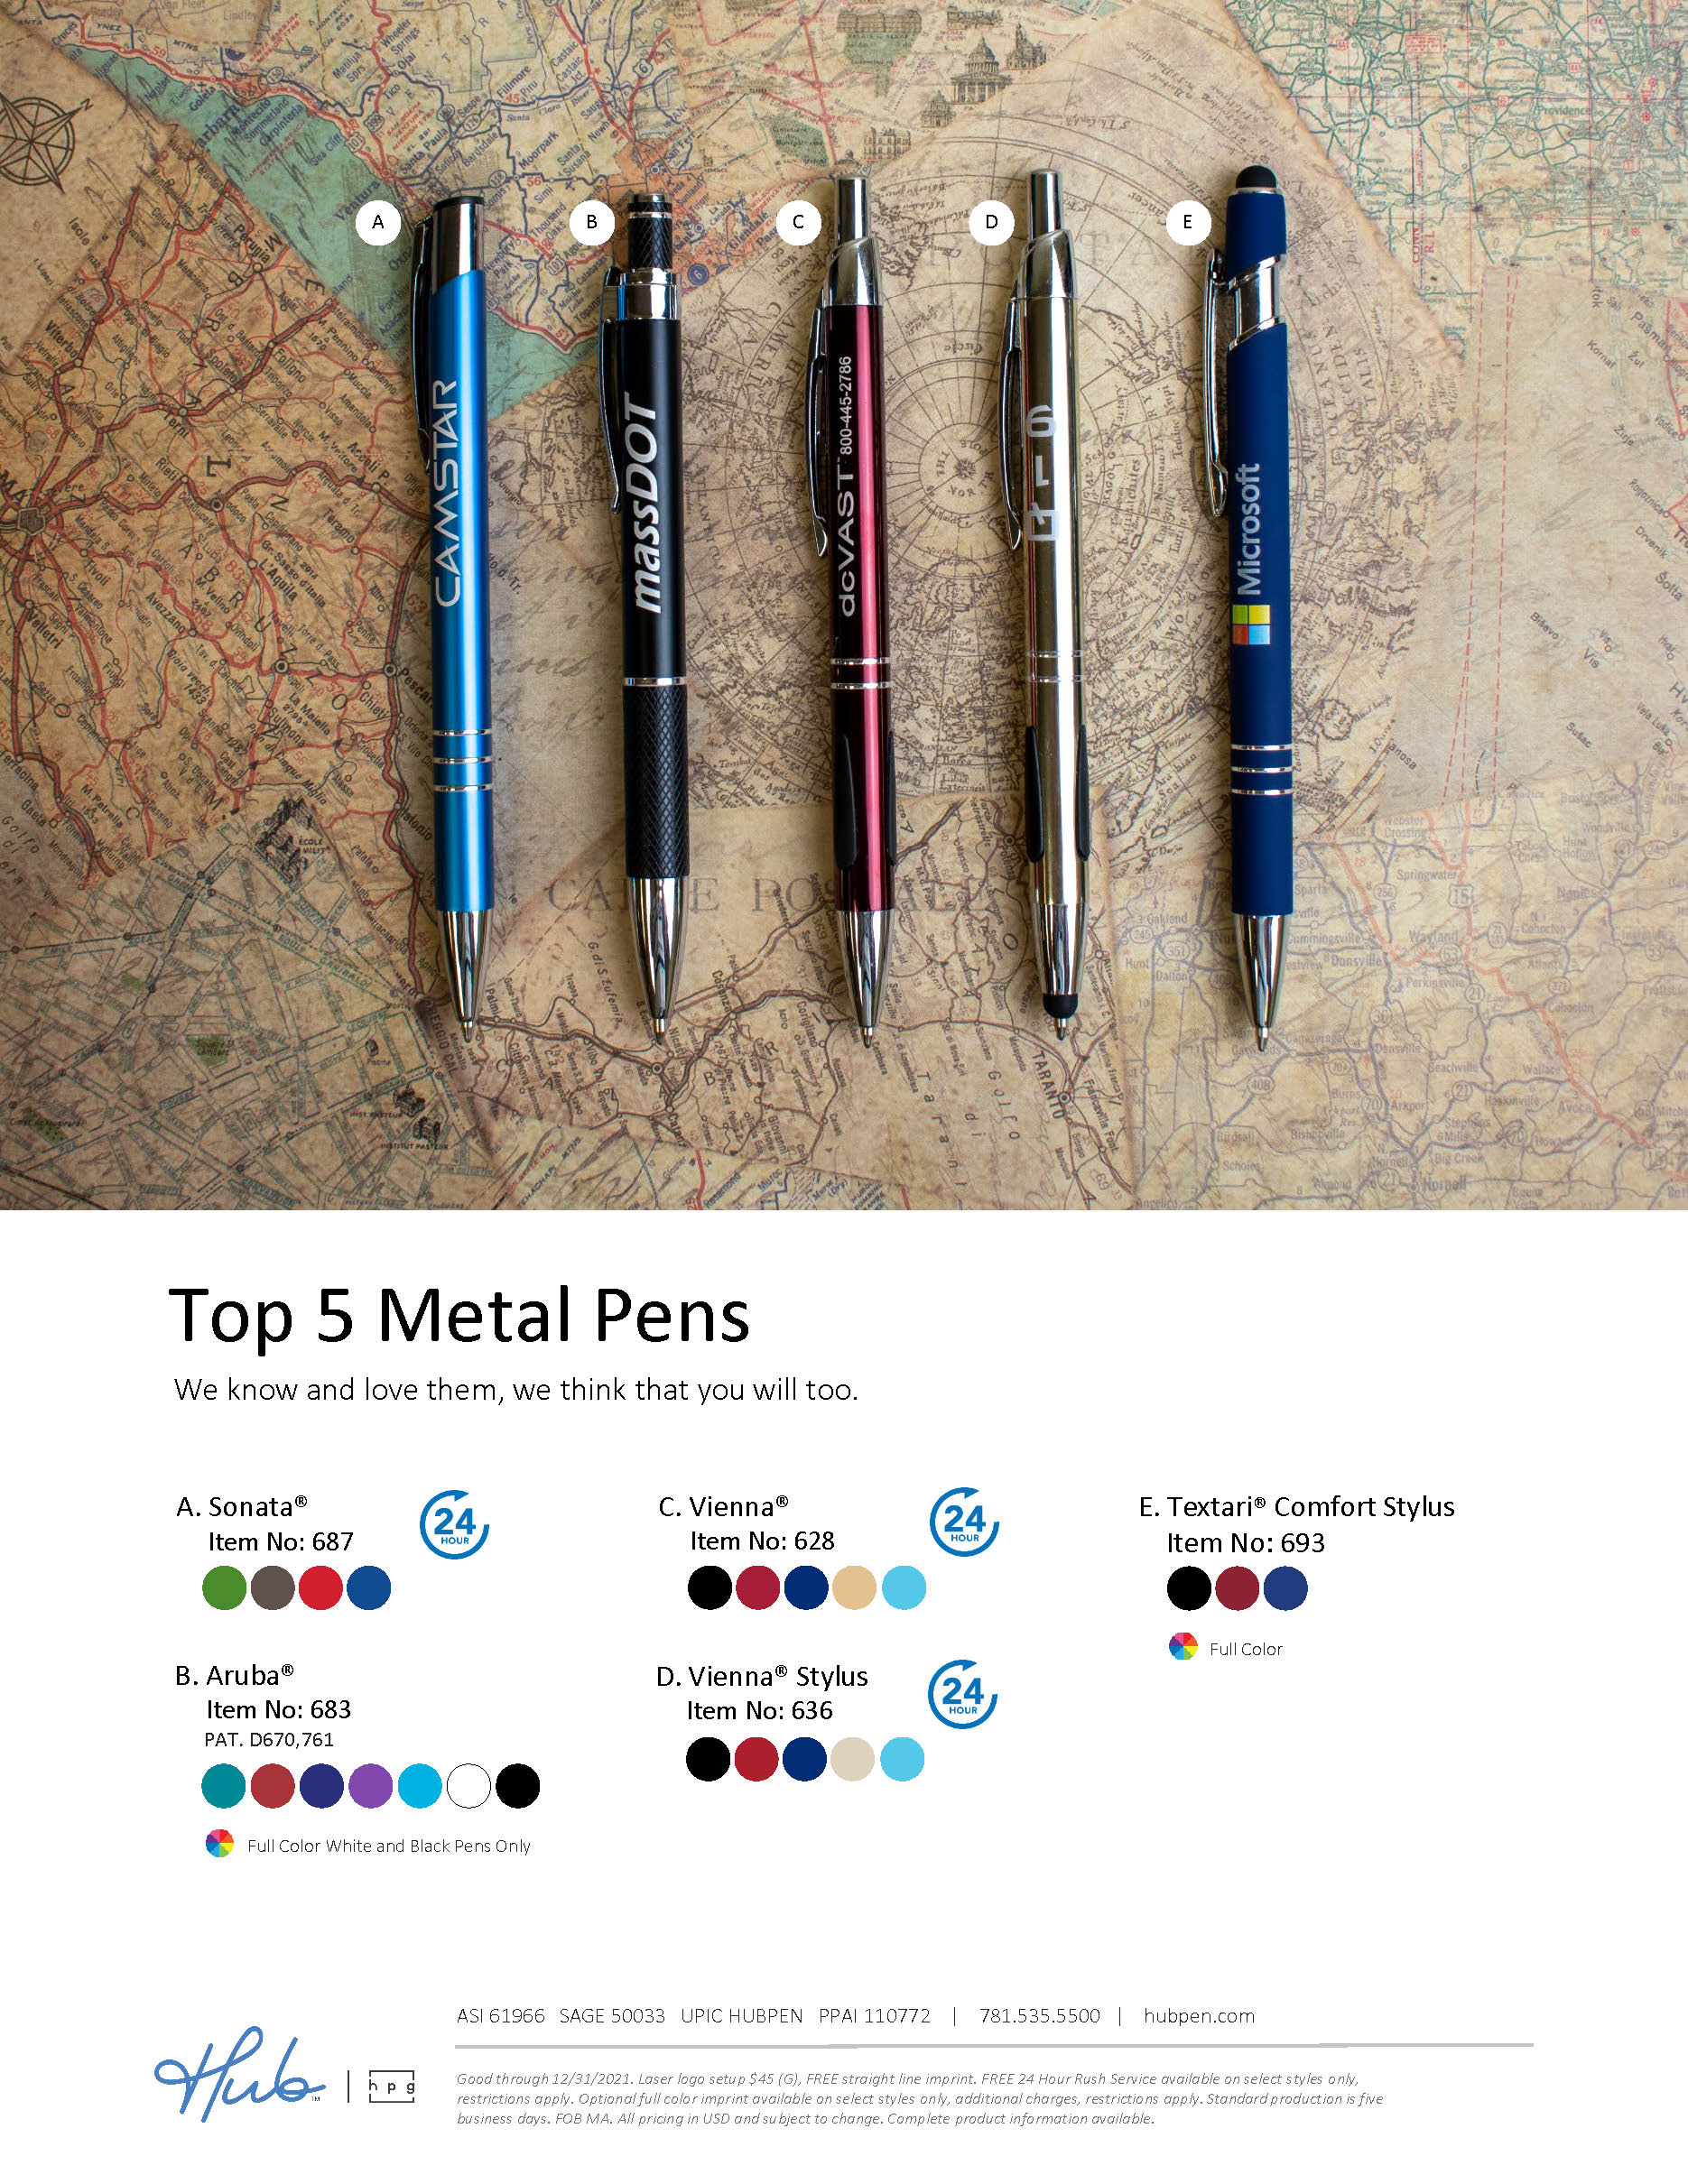 Top 5 Metal Pens Flyer (Hub branded)